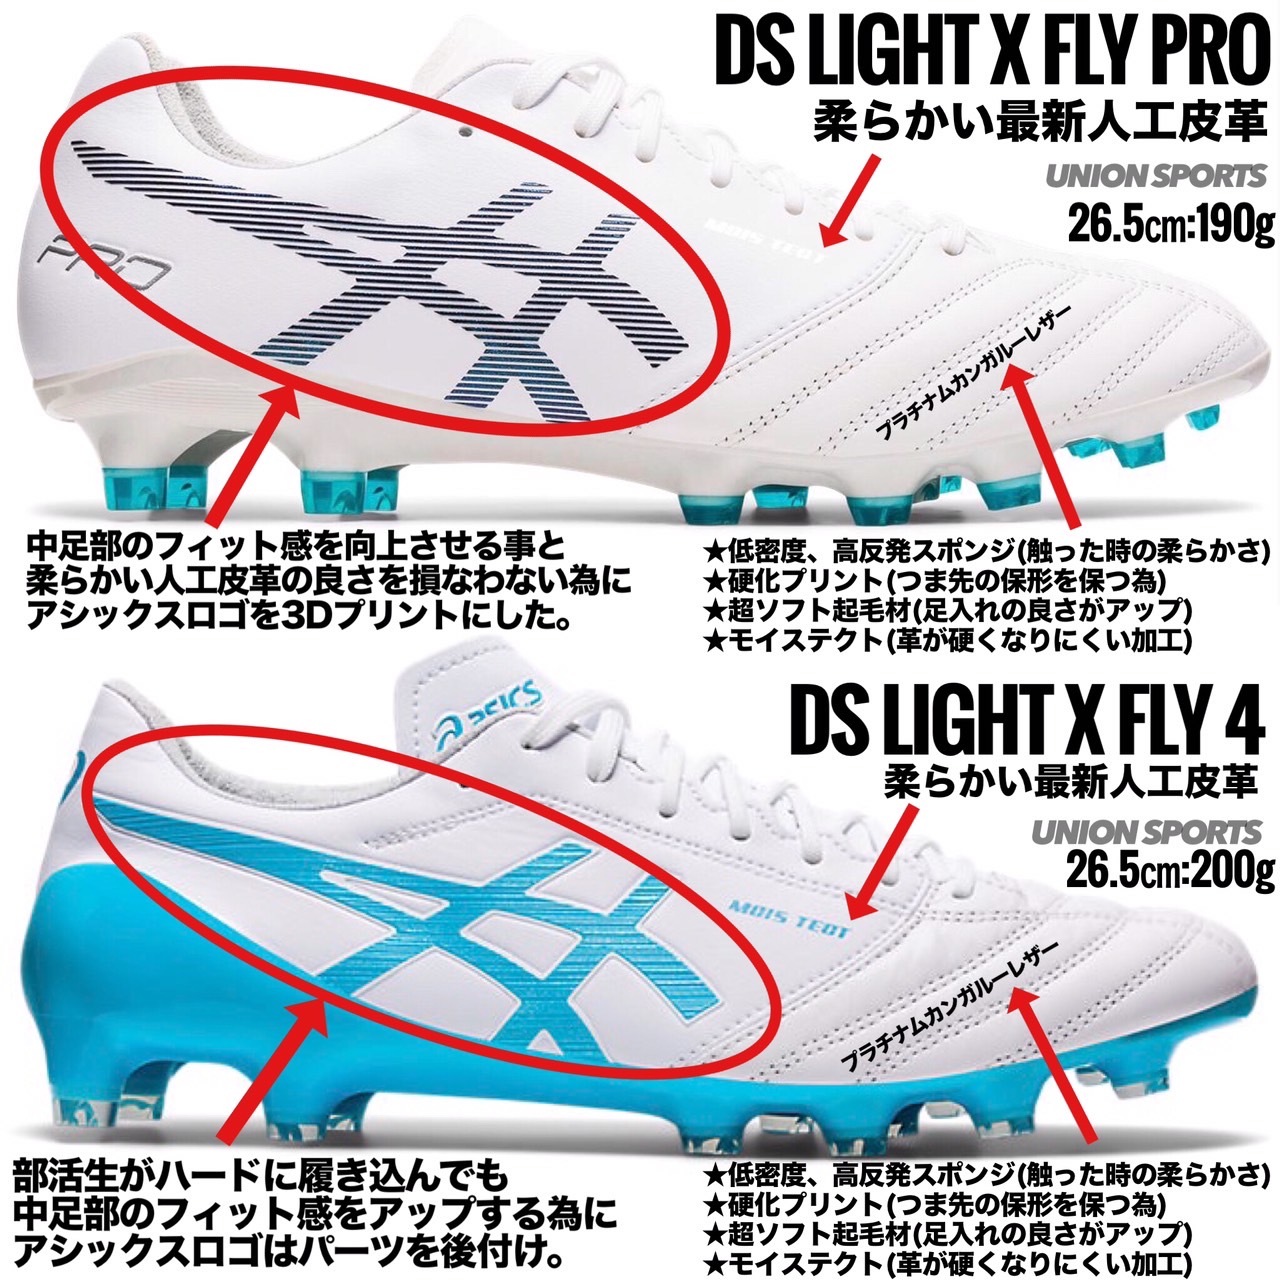 サッカースパイク アシックス Ds Light X Fly Proの商品一覧 サッカーショップ ユニオンスポーツ